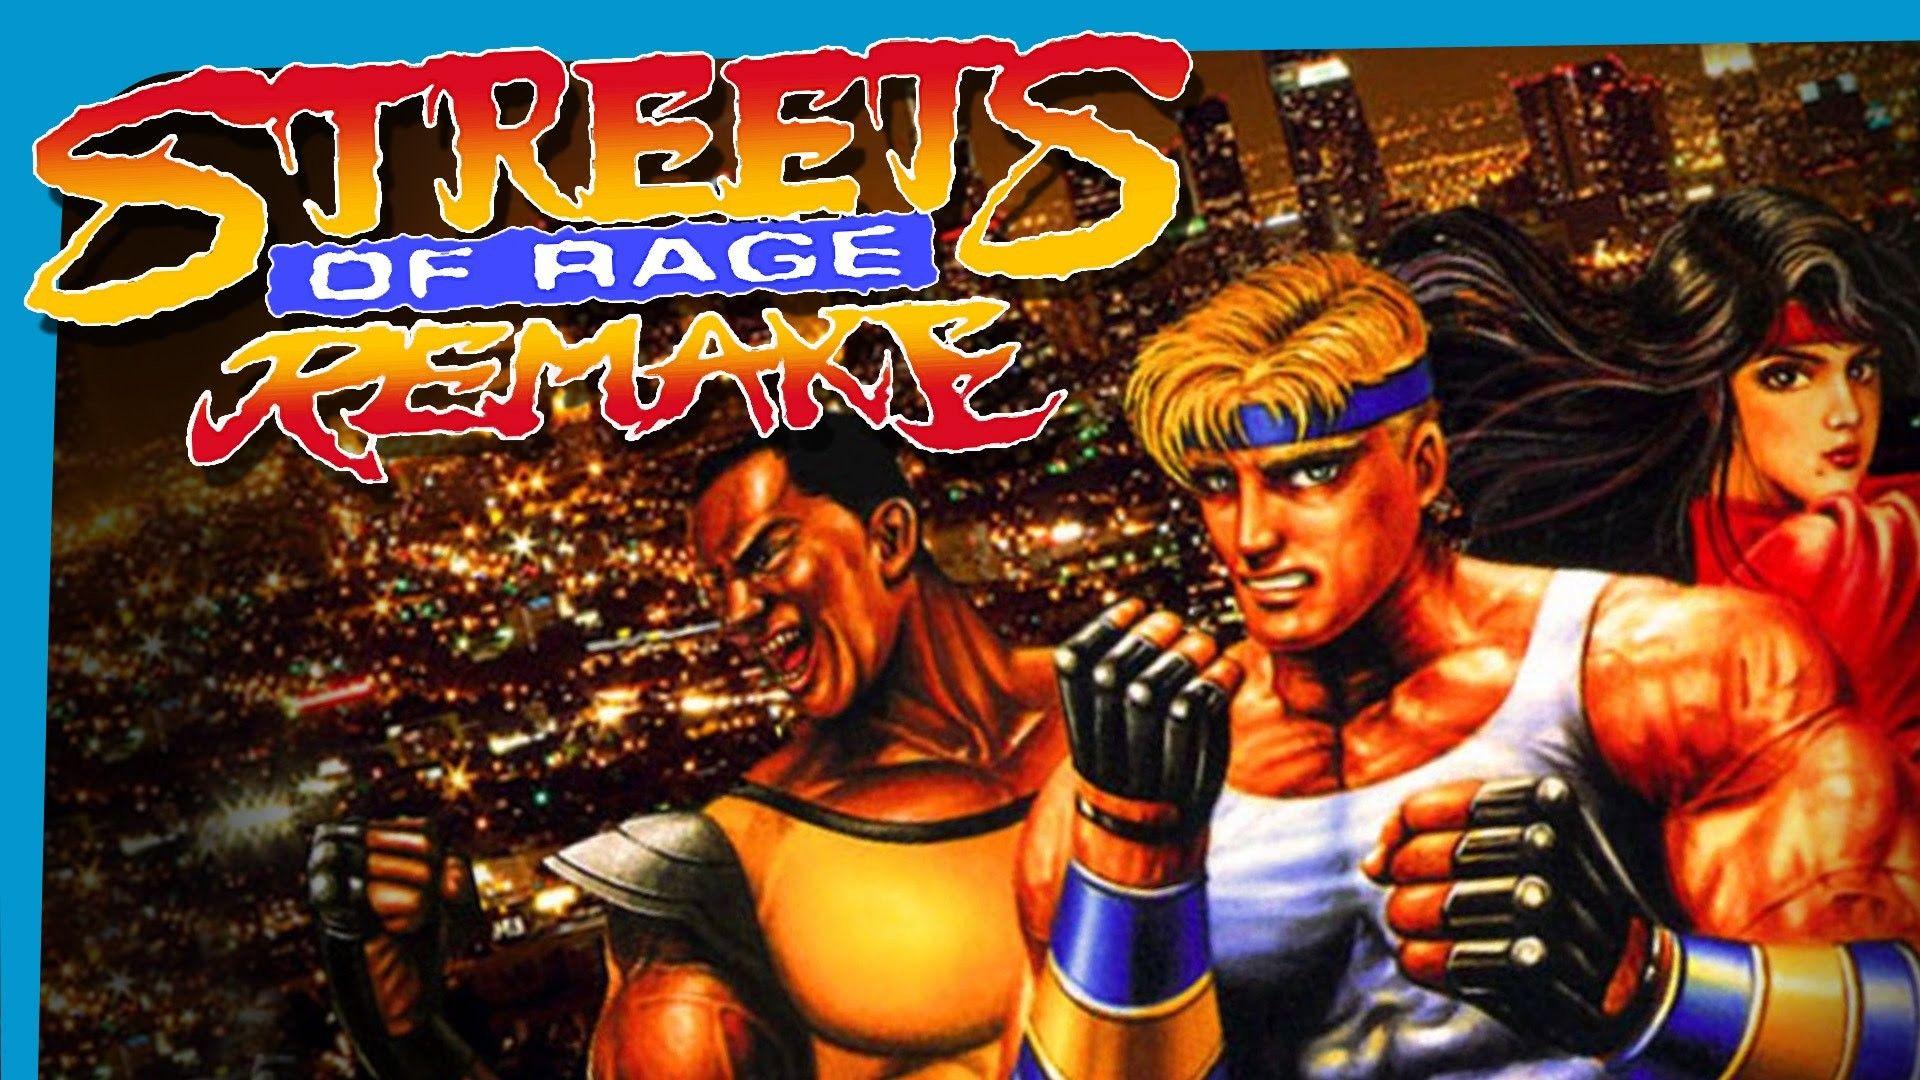 street of rage remake v5 ost download